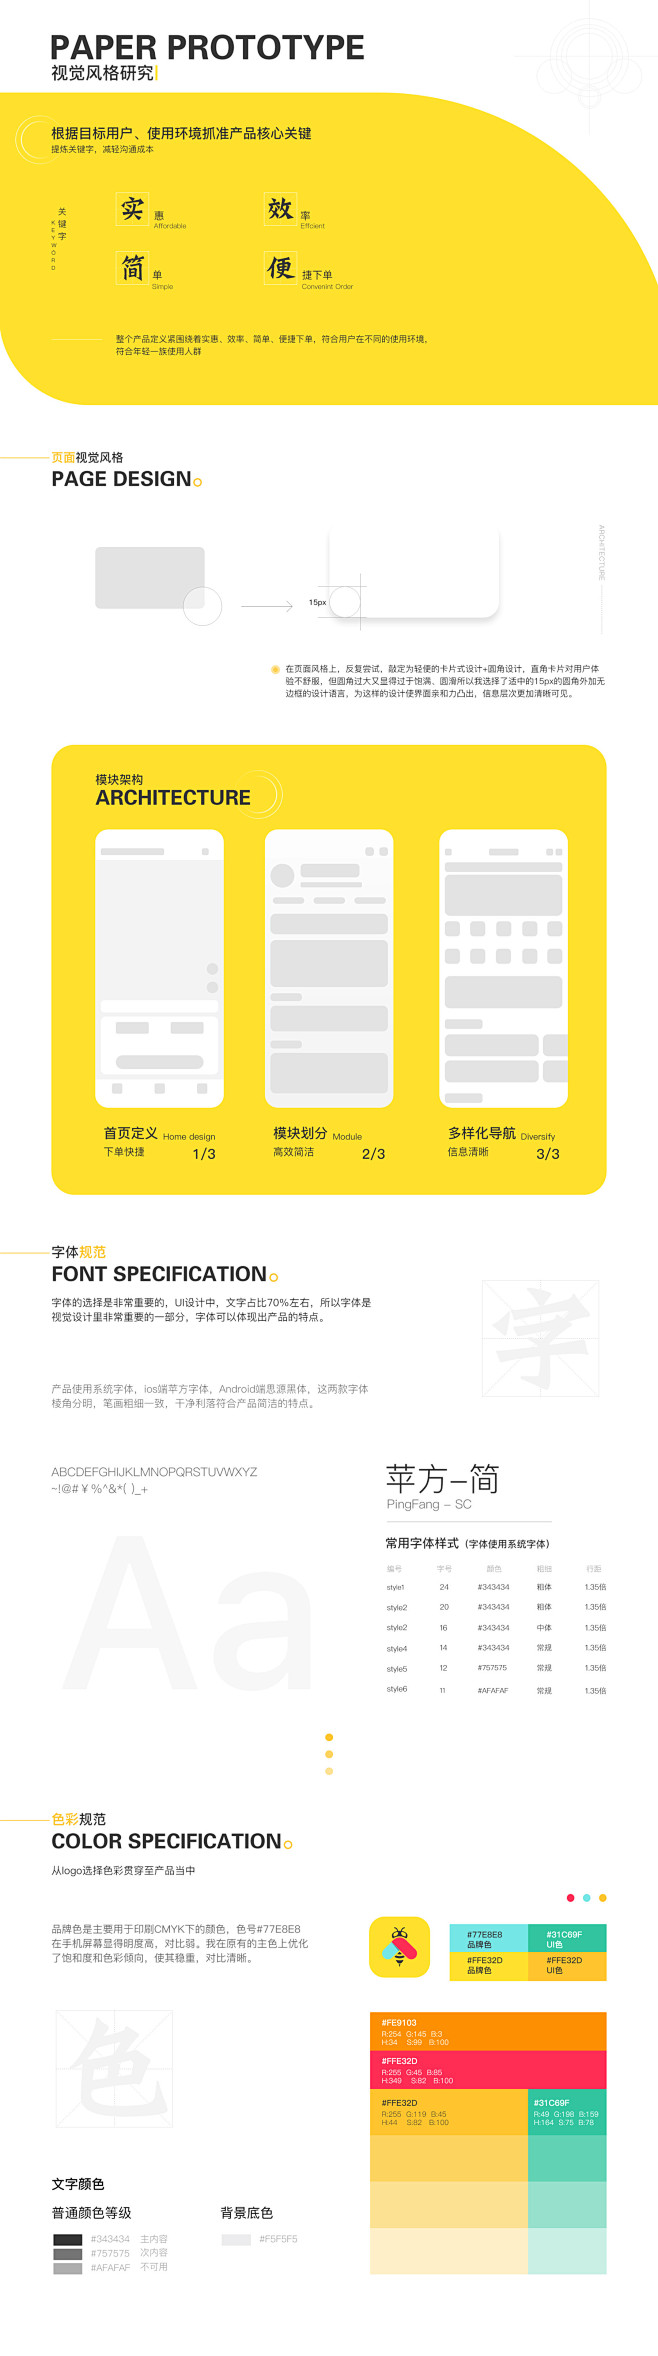 蜜蜂回收-数字化概念设计-UI中国用户体...